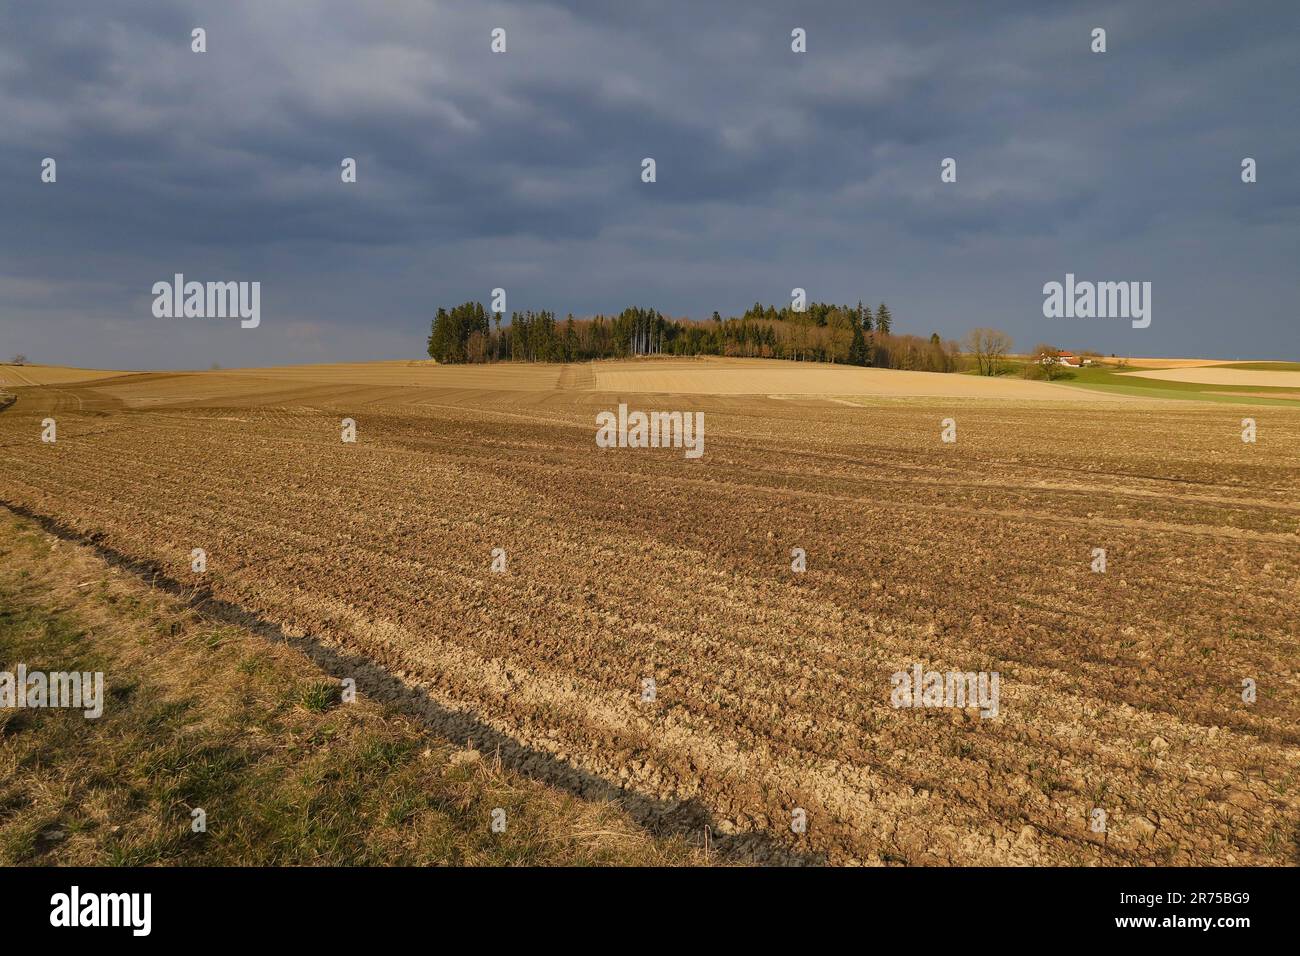 Paisaje agrícola despejado, suelo crudo expuesto a los elementos, Alemania, Baviera Foto de stock